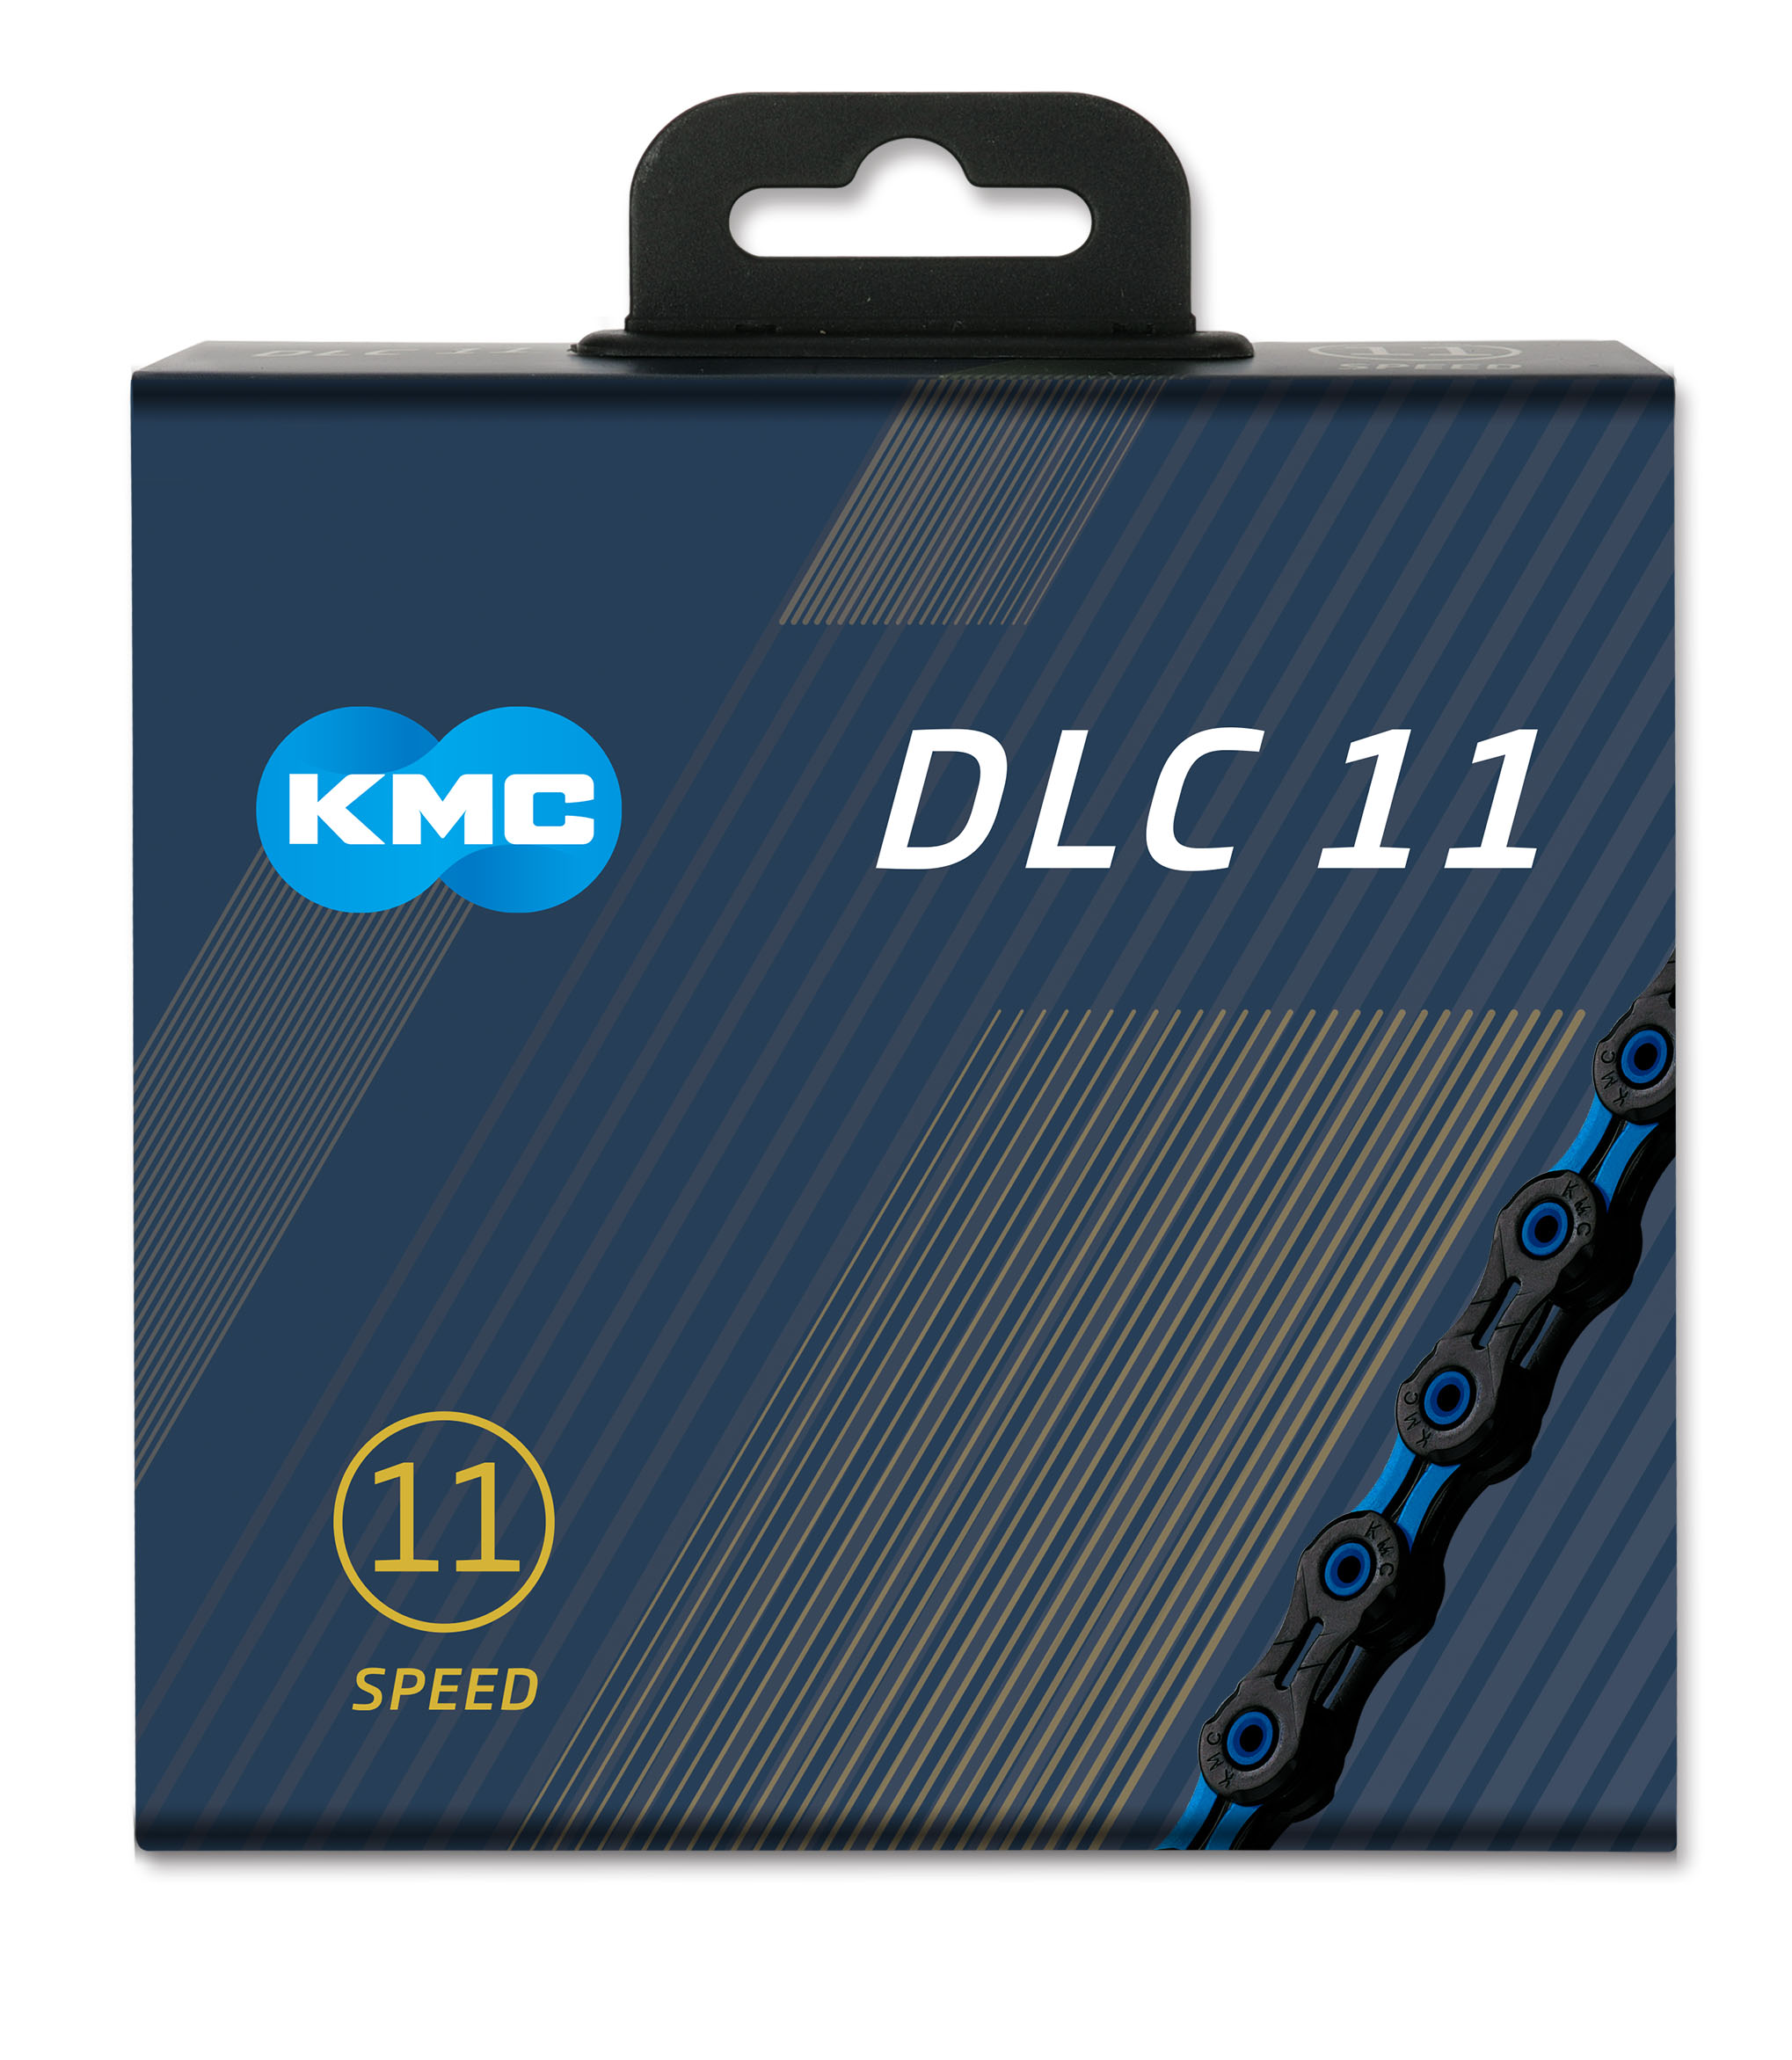 Řetěz KMC DLC 11 Black / Blue, 11 Speed